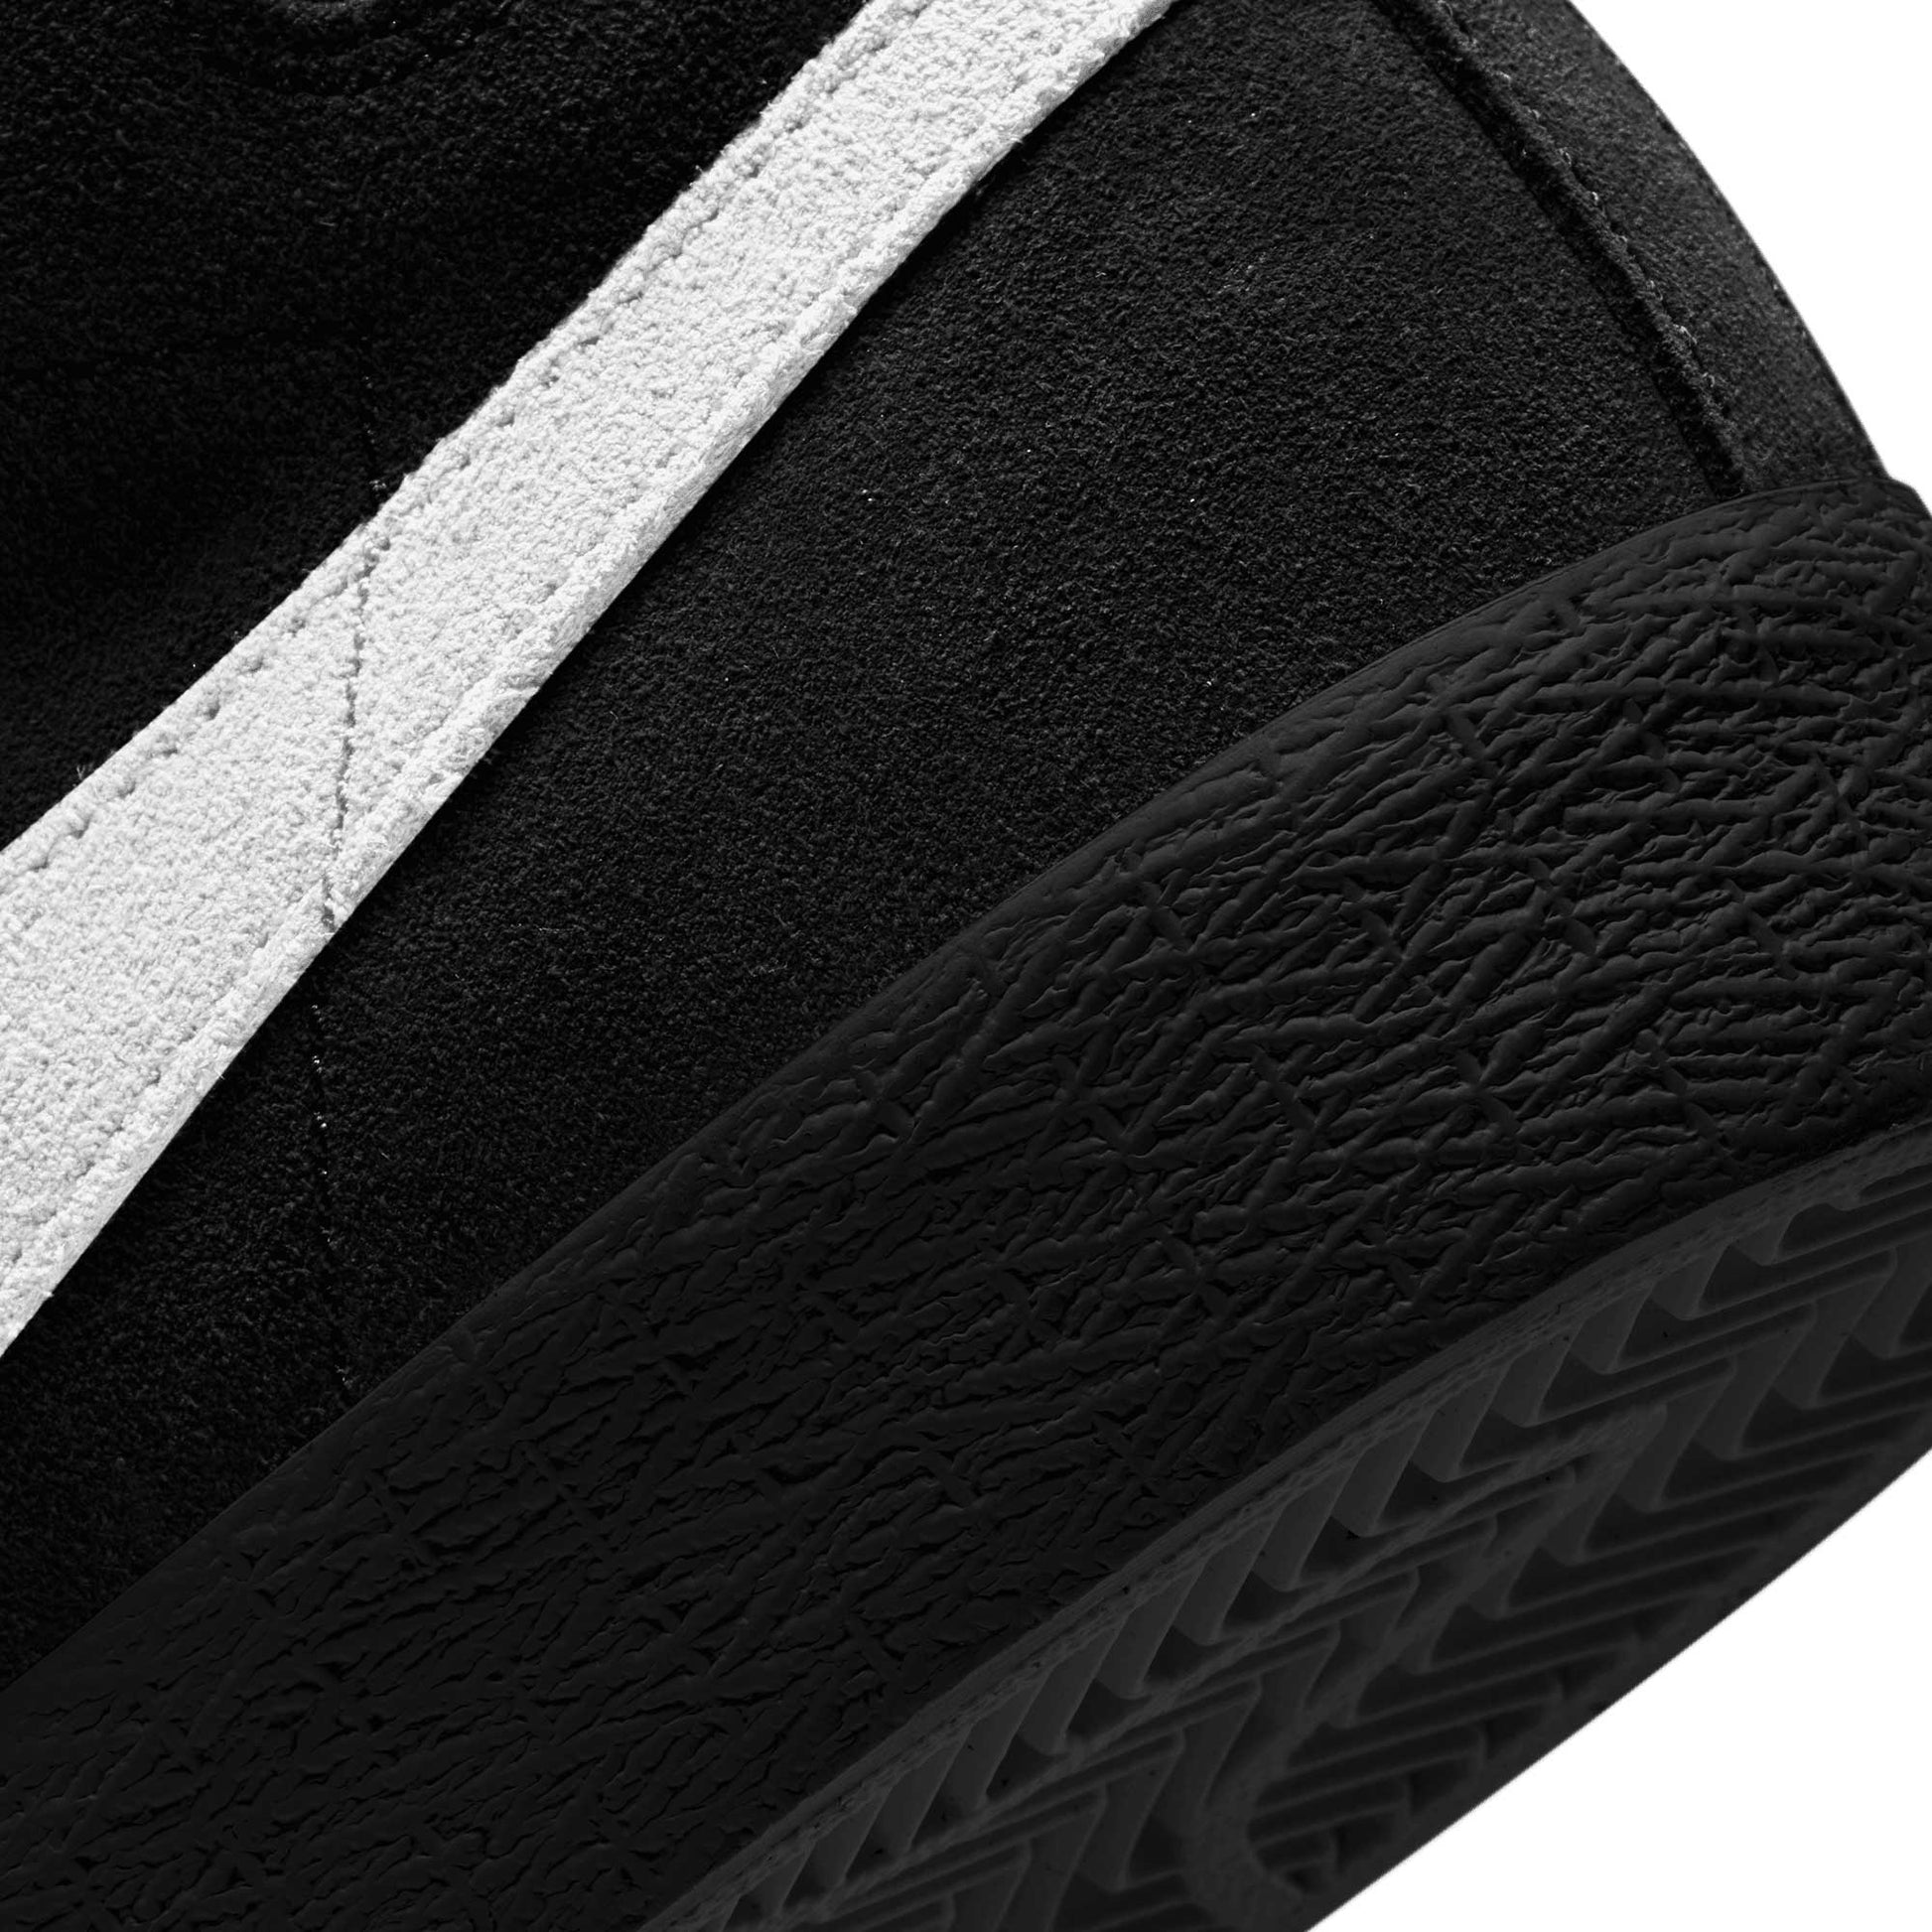 Nike SB Zoom Blazer Mid, black/white-black-black - Tiki Room Skateboards - 6